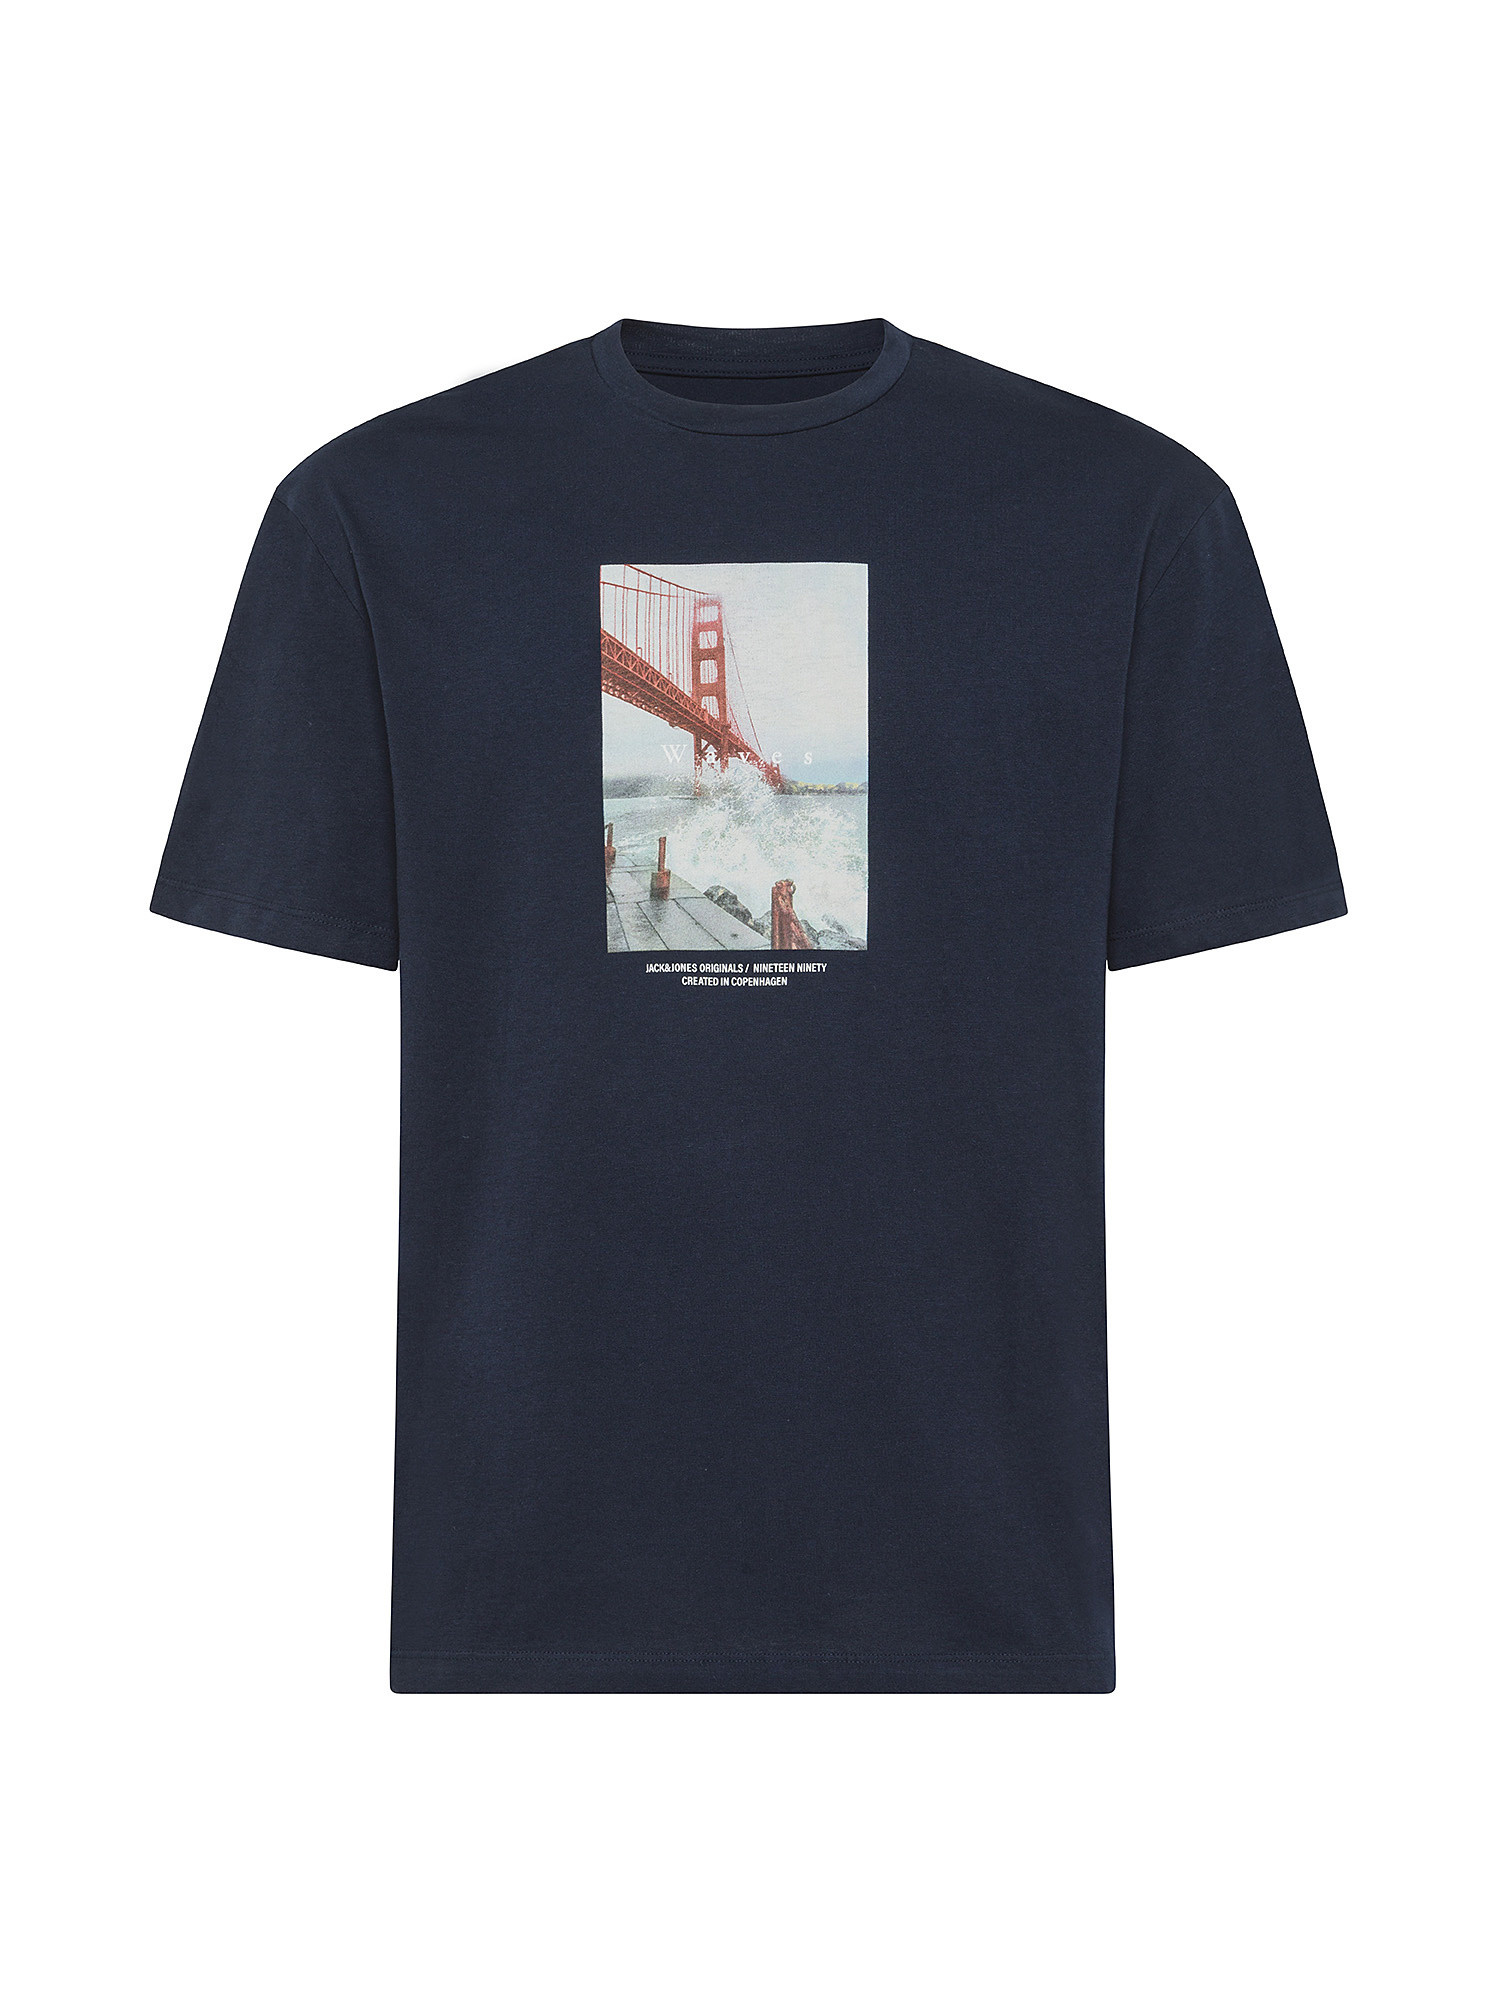 Jack & Jones - Regular fit T-shirt with print, Blue, large image number 0